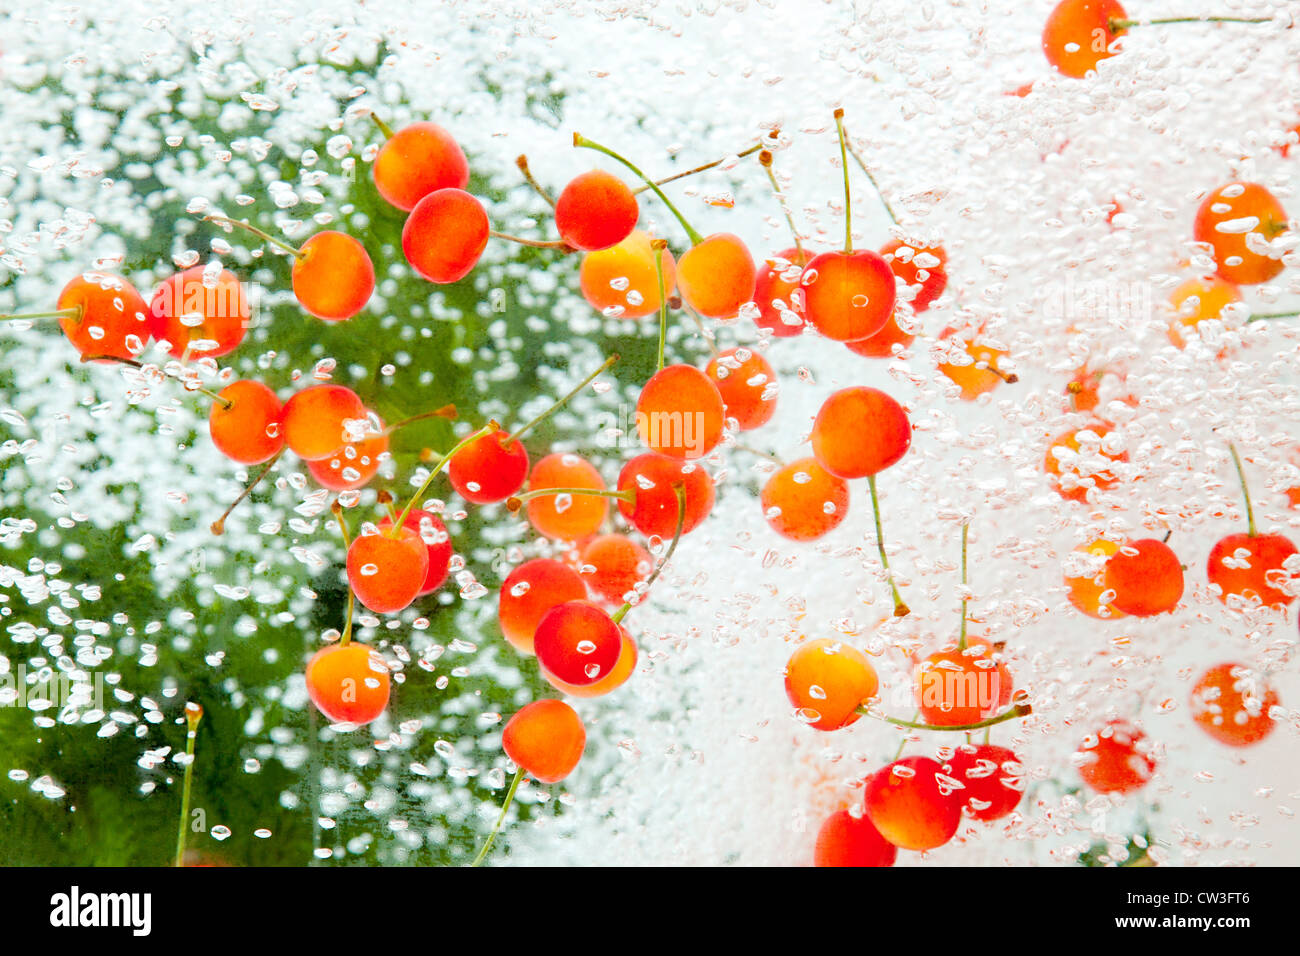 Cherries under water Stock Photo